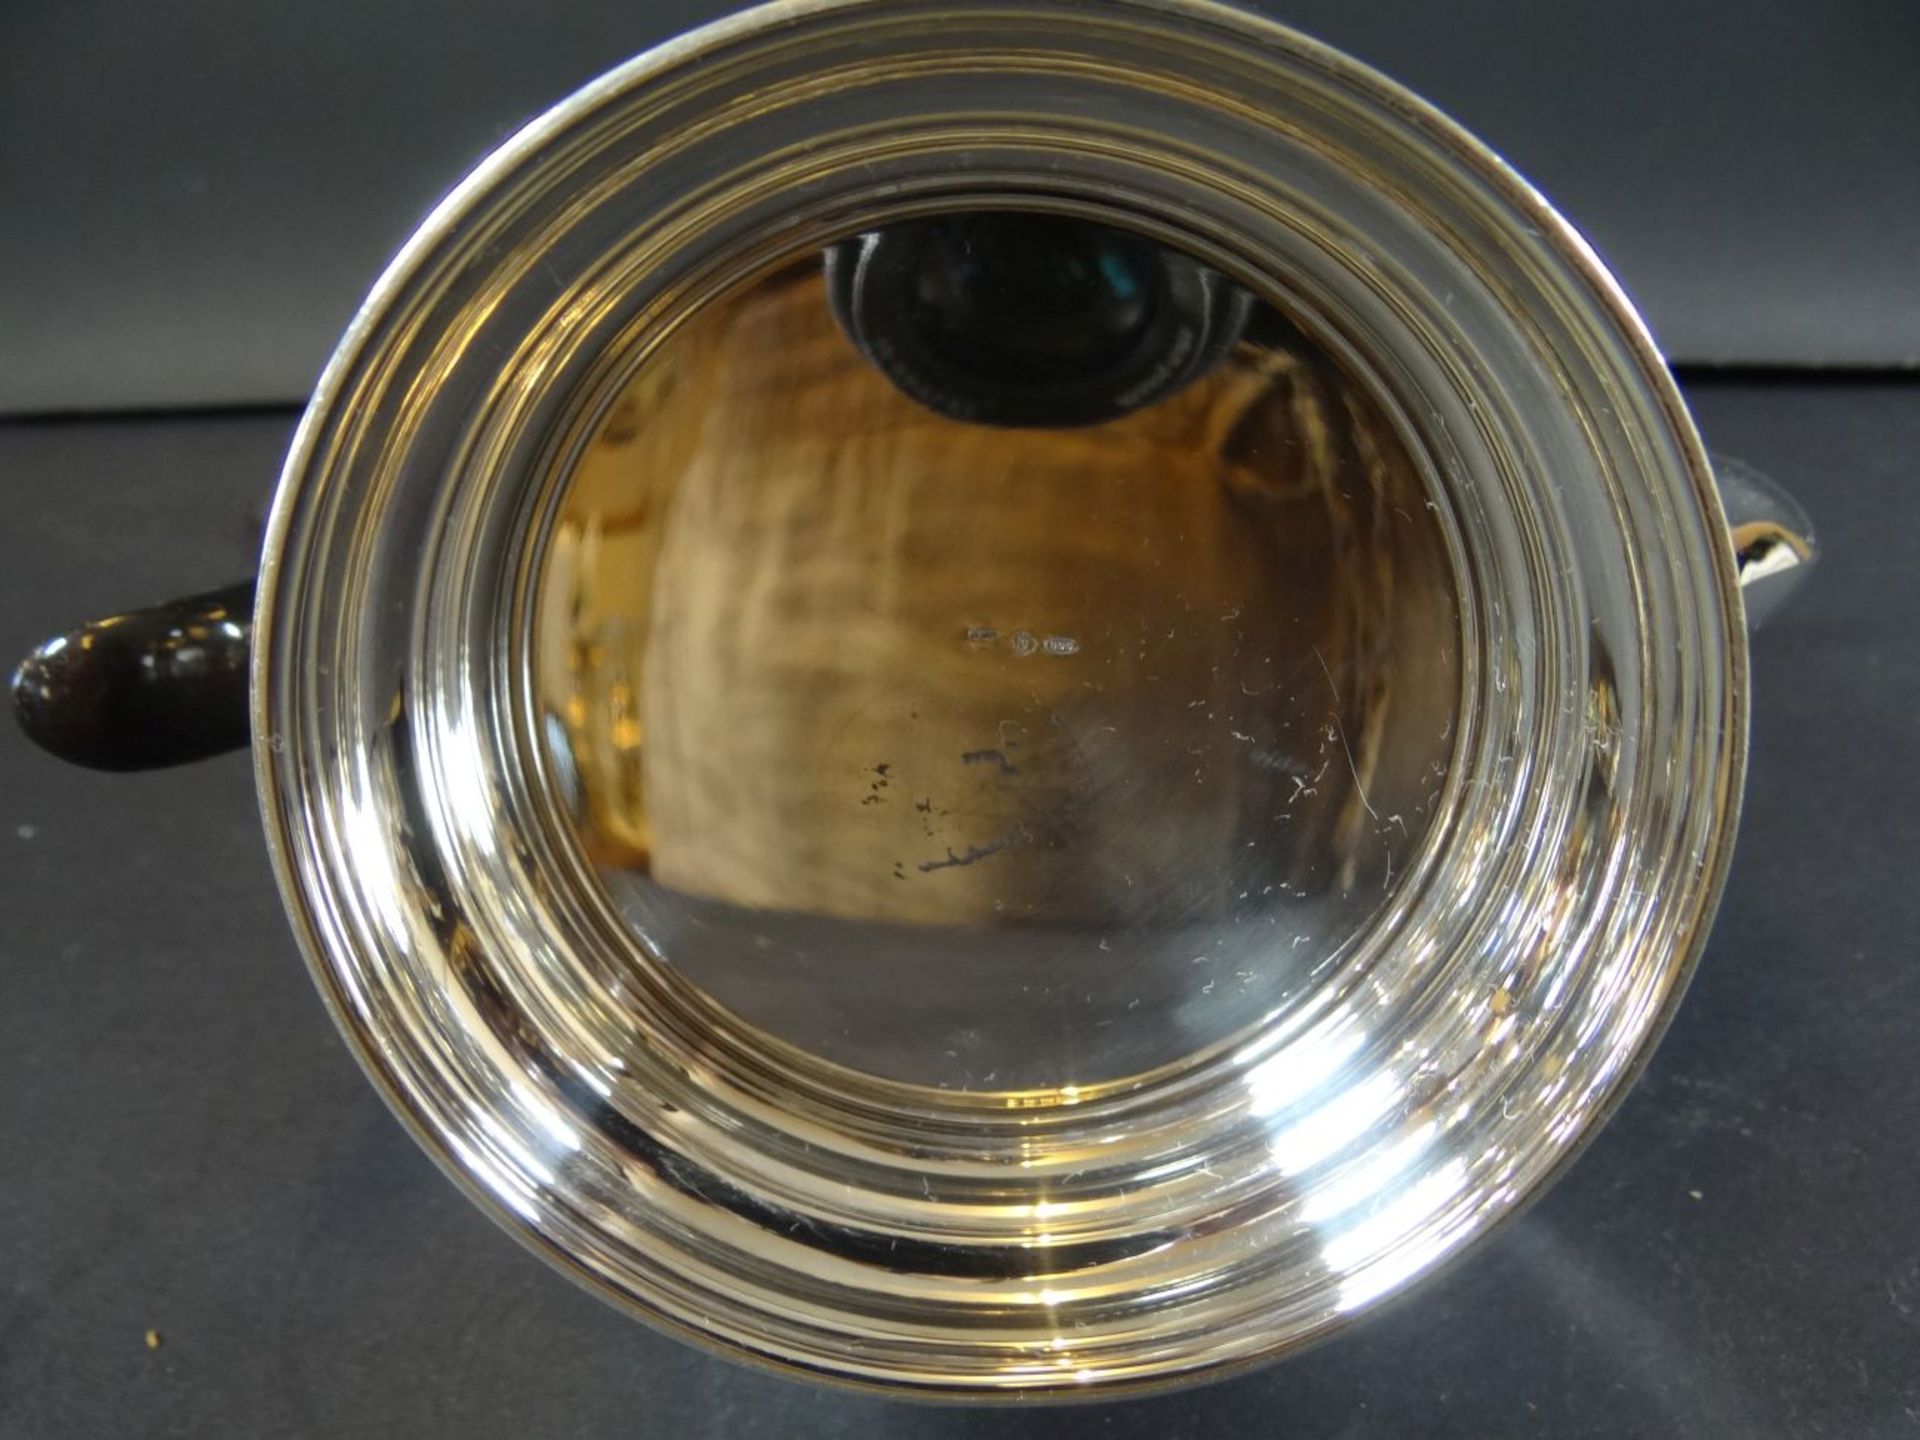 gr. Kaffeekanne, Silber-800-, Holzgriff, sehr gut erhalten, H-22 cm, 700 gr. - Bild 5 aus 6